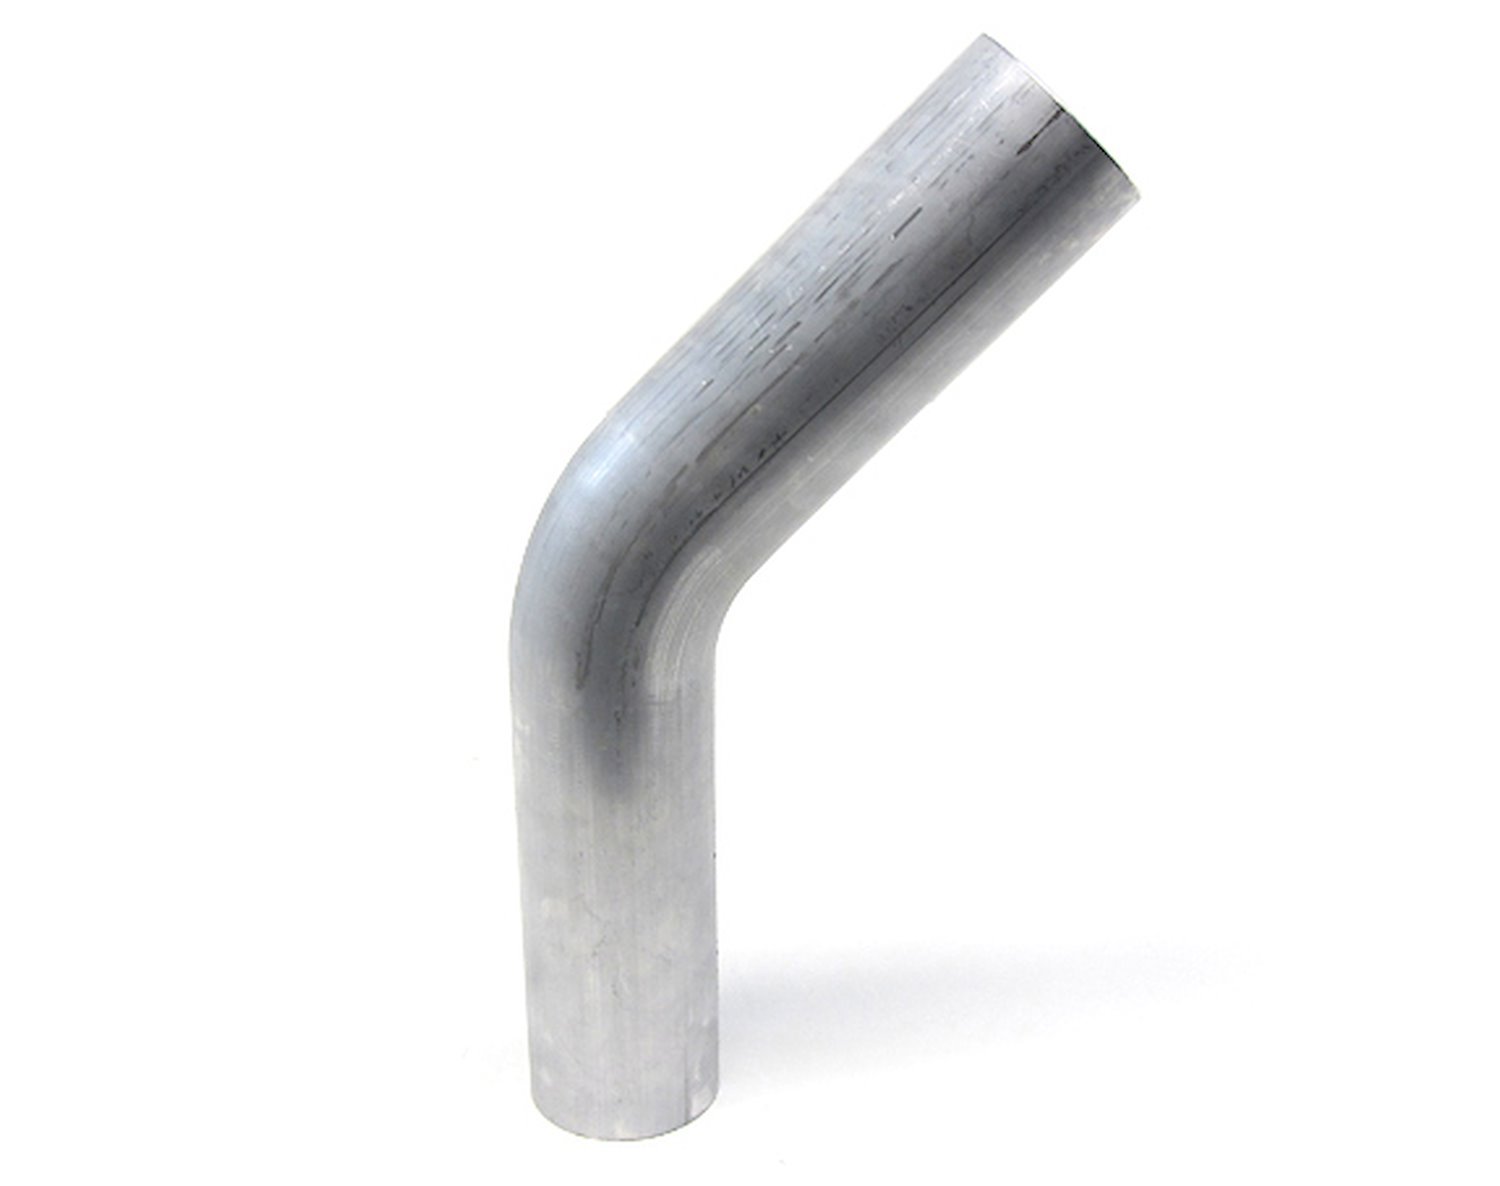 AT45-138-CLR-175 Aluminum Elbow Tube, 6061 Aluminum, 45-Degree Bend Elbow Tubing, 1-3/8 in. OD, Tight Radius, 1-3/4 in. CLR